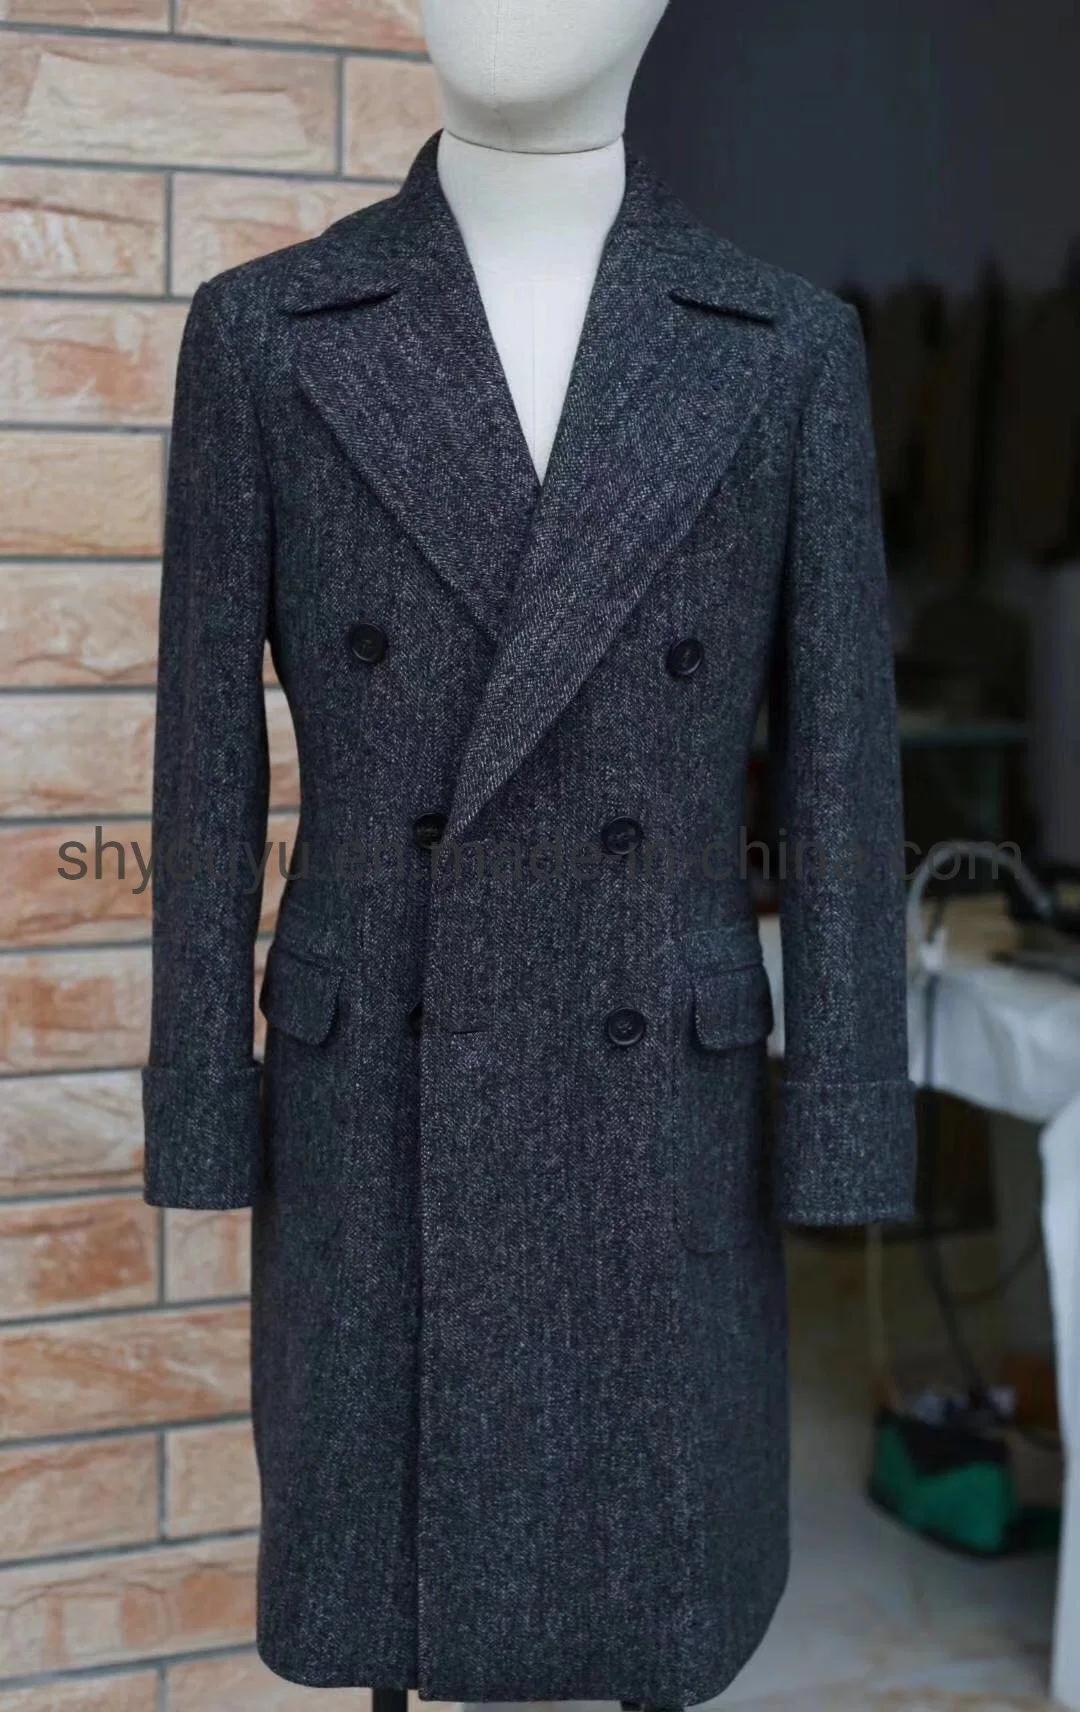 Mtm Bespoke Woolen Trench Coat Men Wool Winter Overcoat